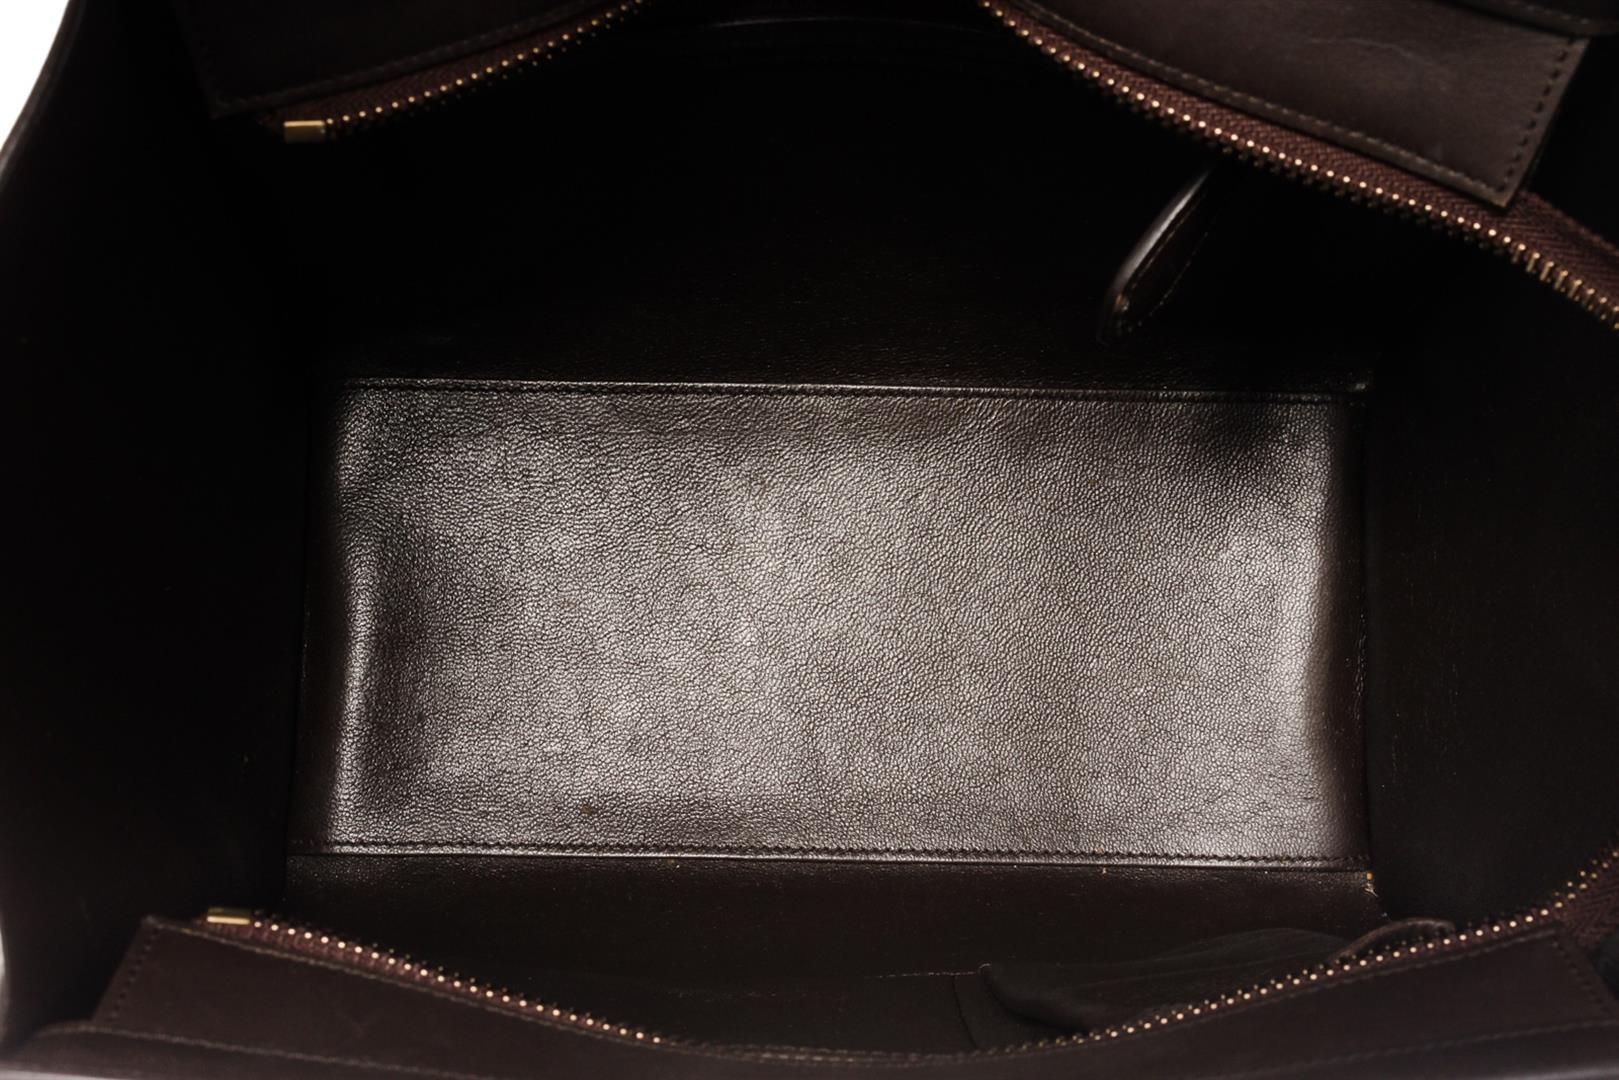 Celine Brown Multicolor Suede Leather Micro Luggage Handbag